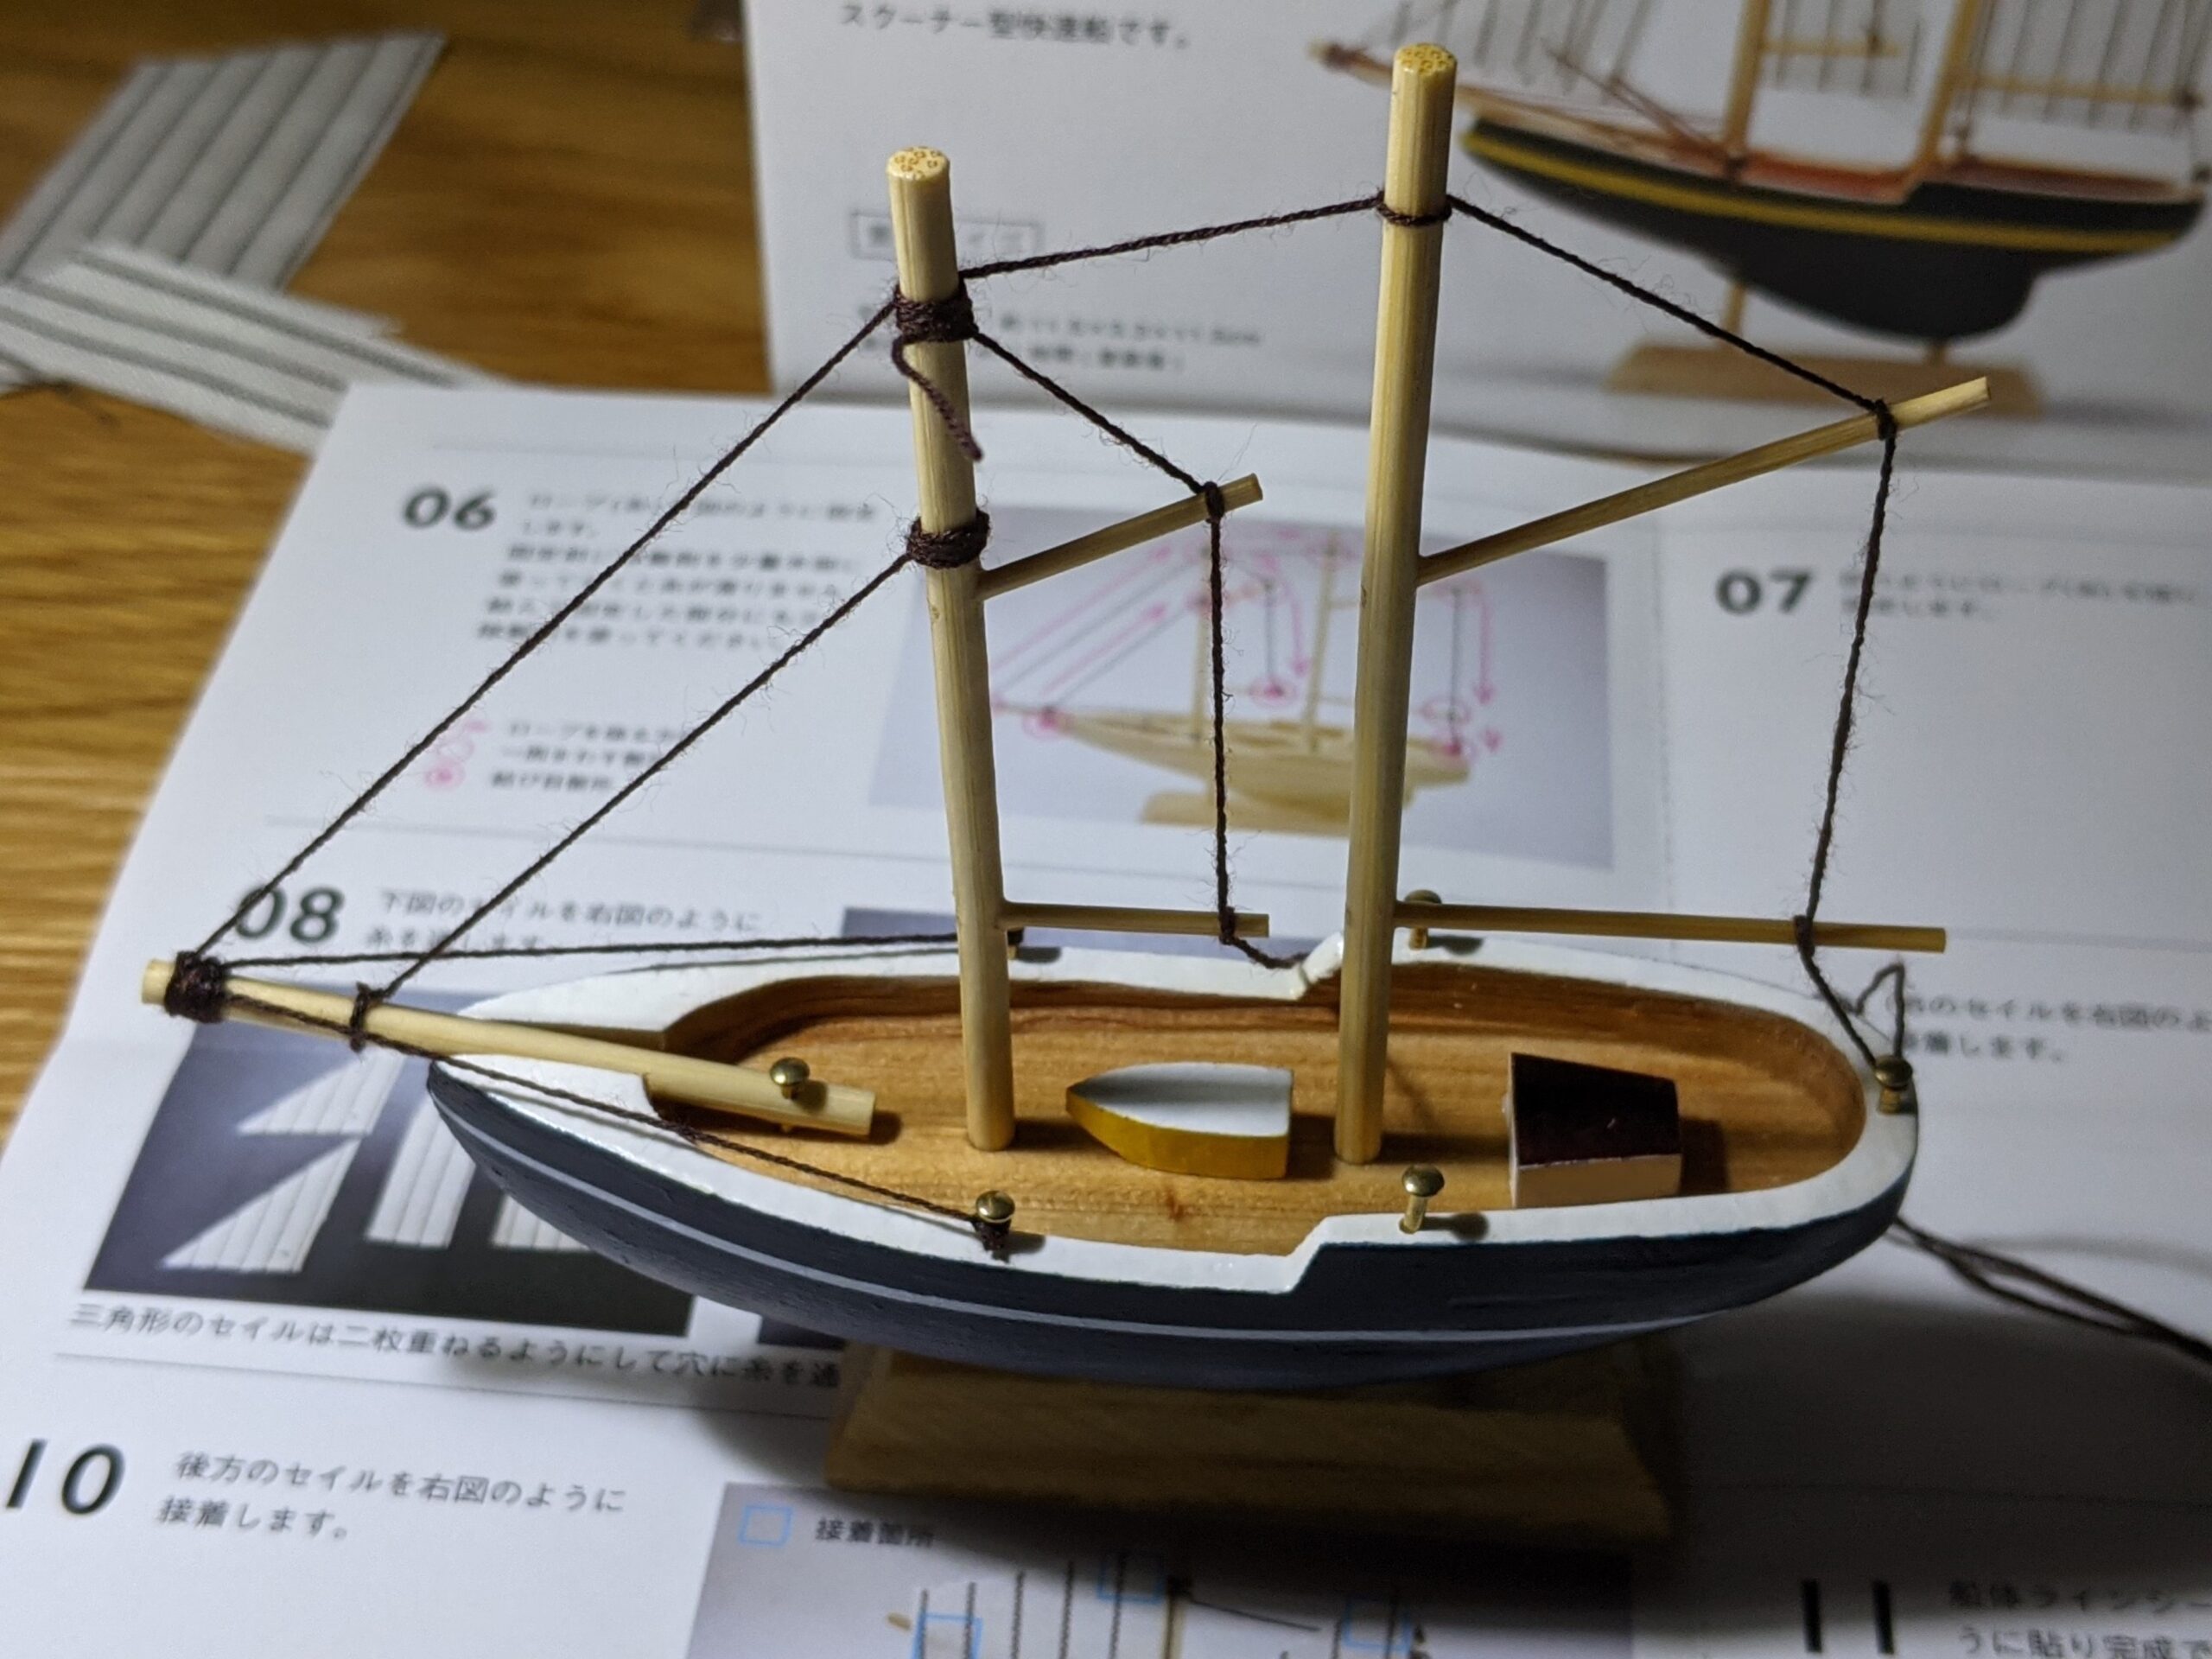 あおぞら モデルシップ 帆船模型 AOZORA ブルーノーズ ミニ Bluenose Mini のマストにロープを取り付けた様子